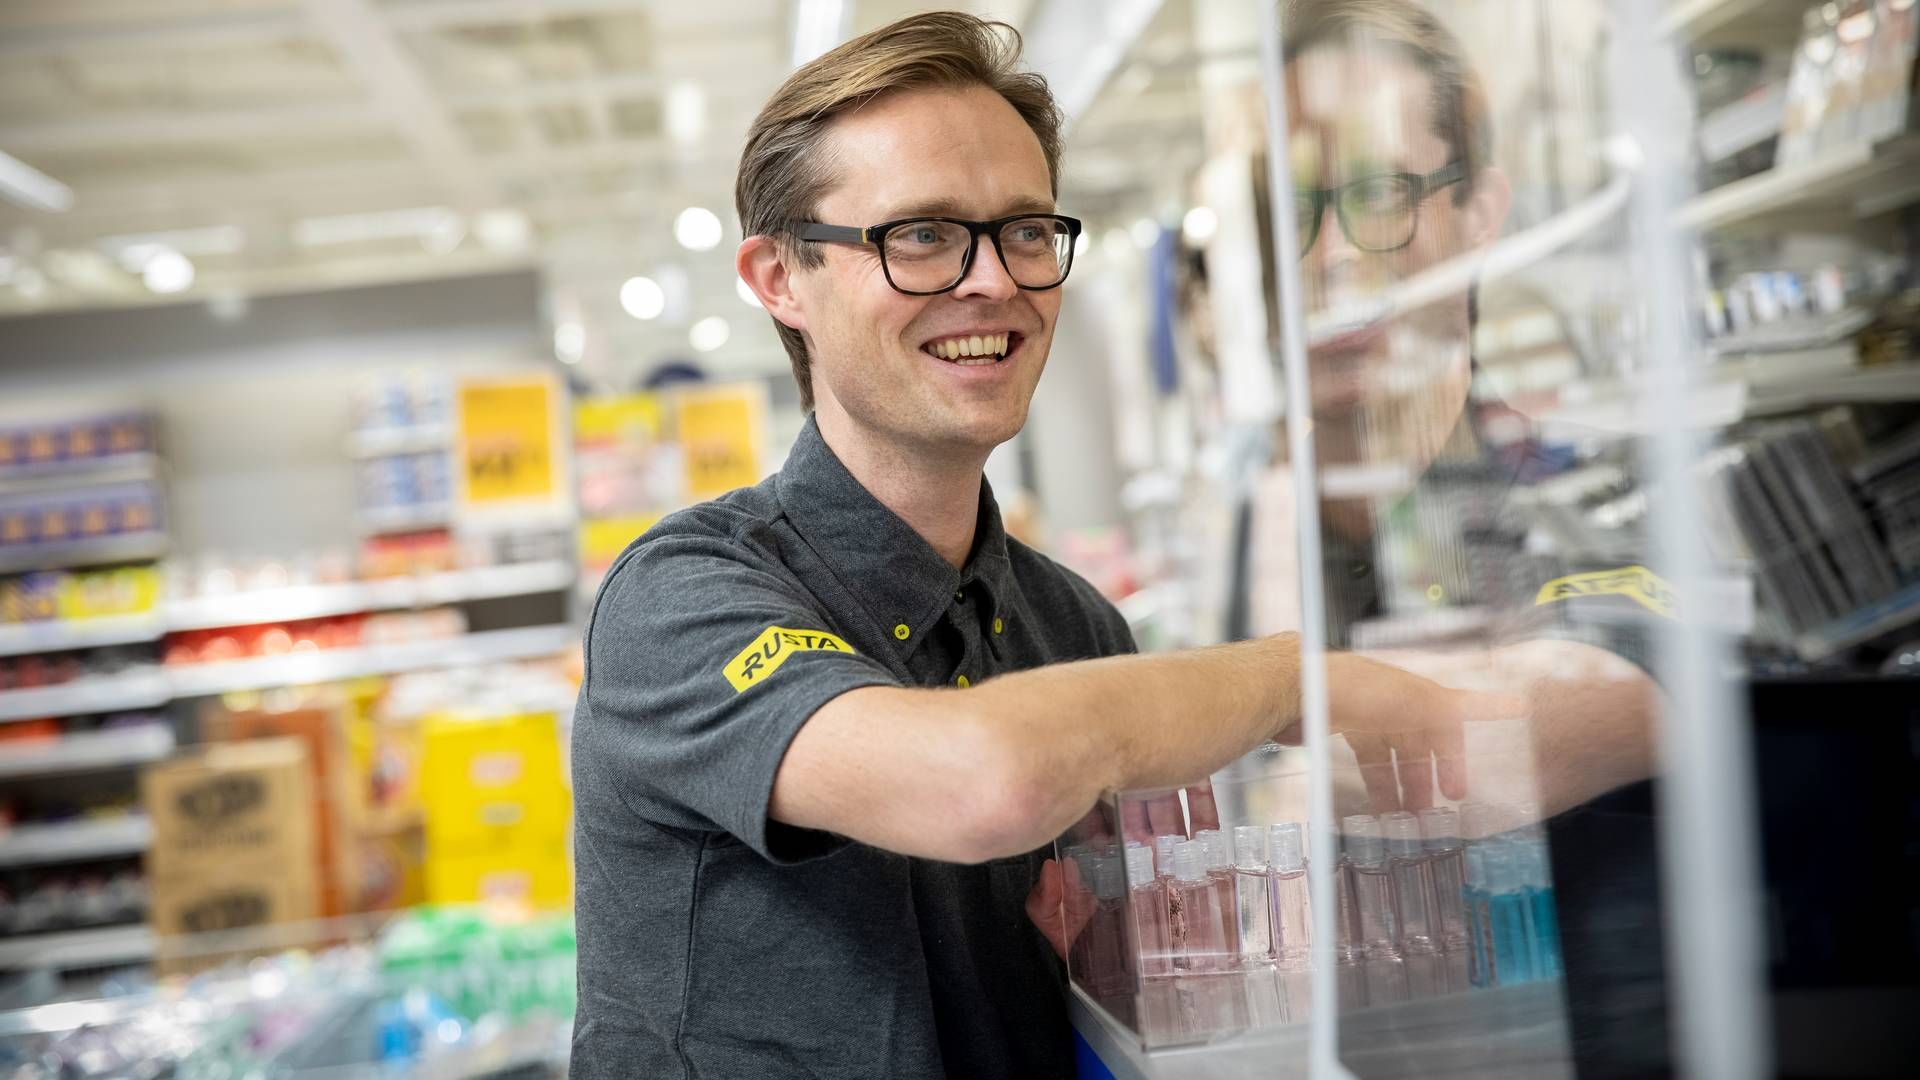 PLANER: Erlend Kramer, landssjef for Rusta i Norge, åpner flere butikker både i Norge, Sverige og Finland. | Foto: Rusta